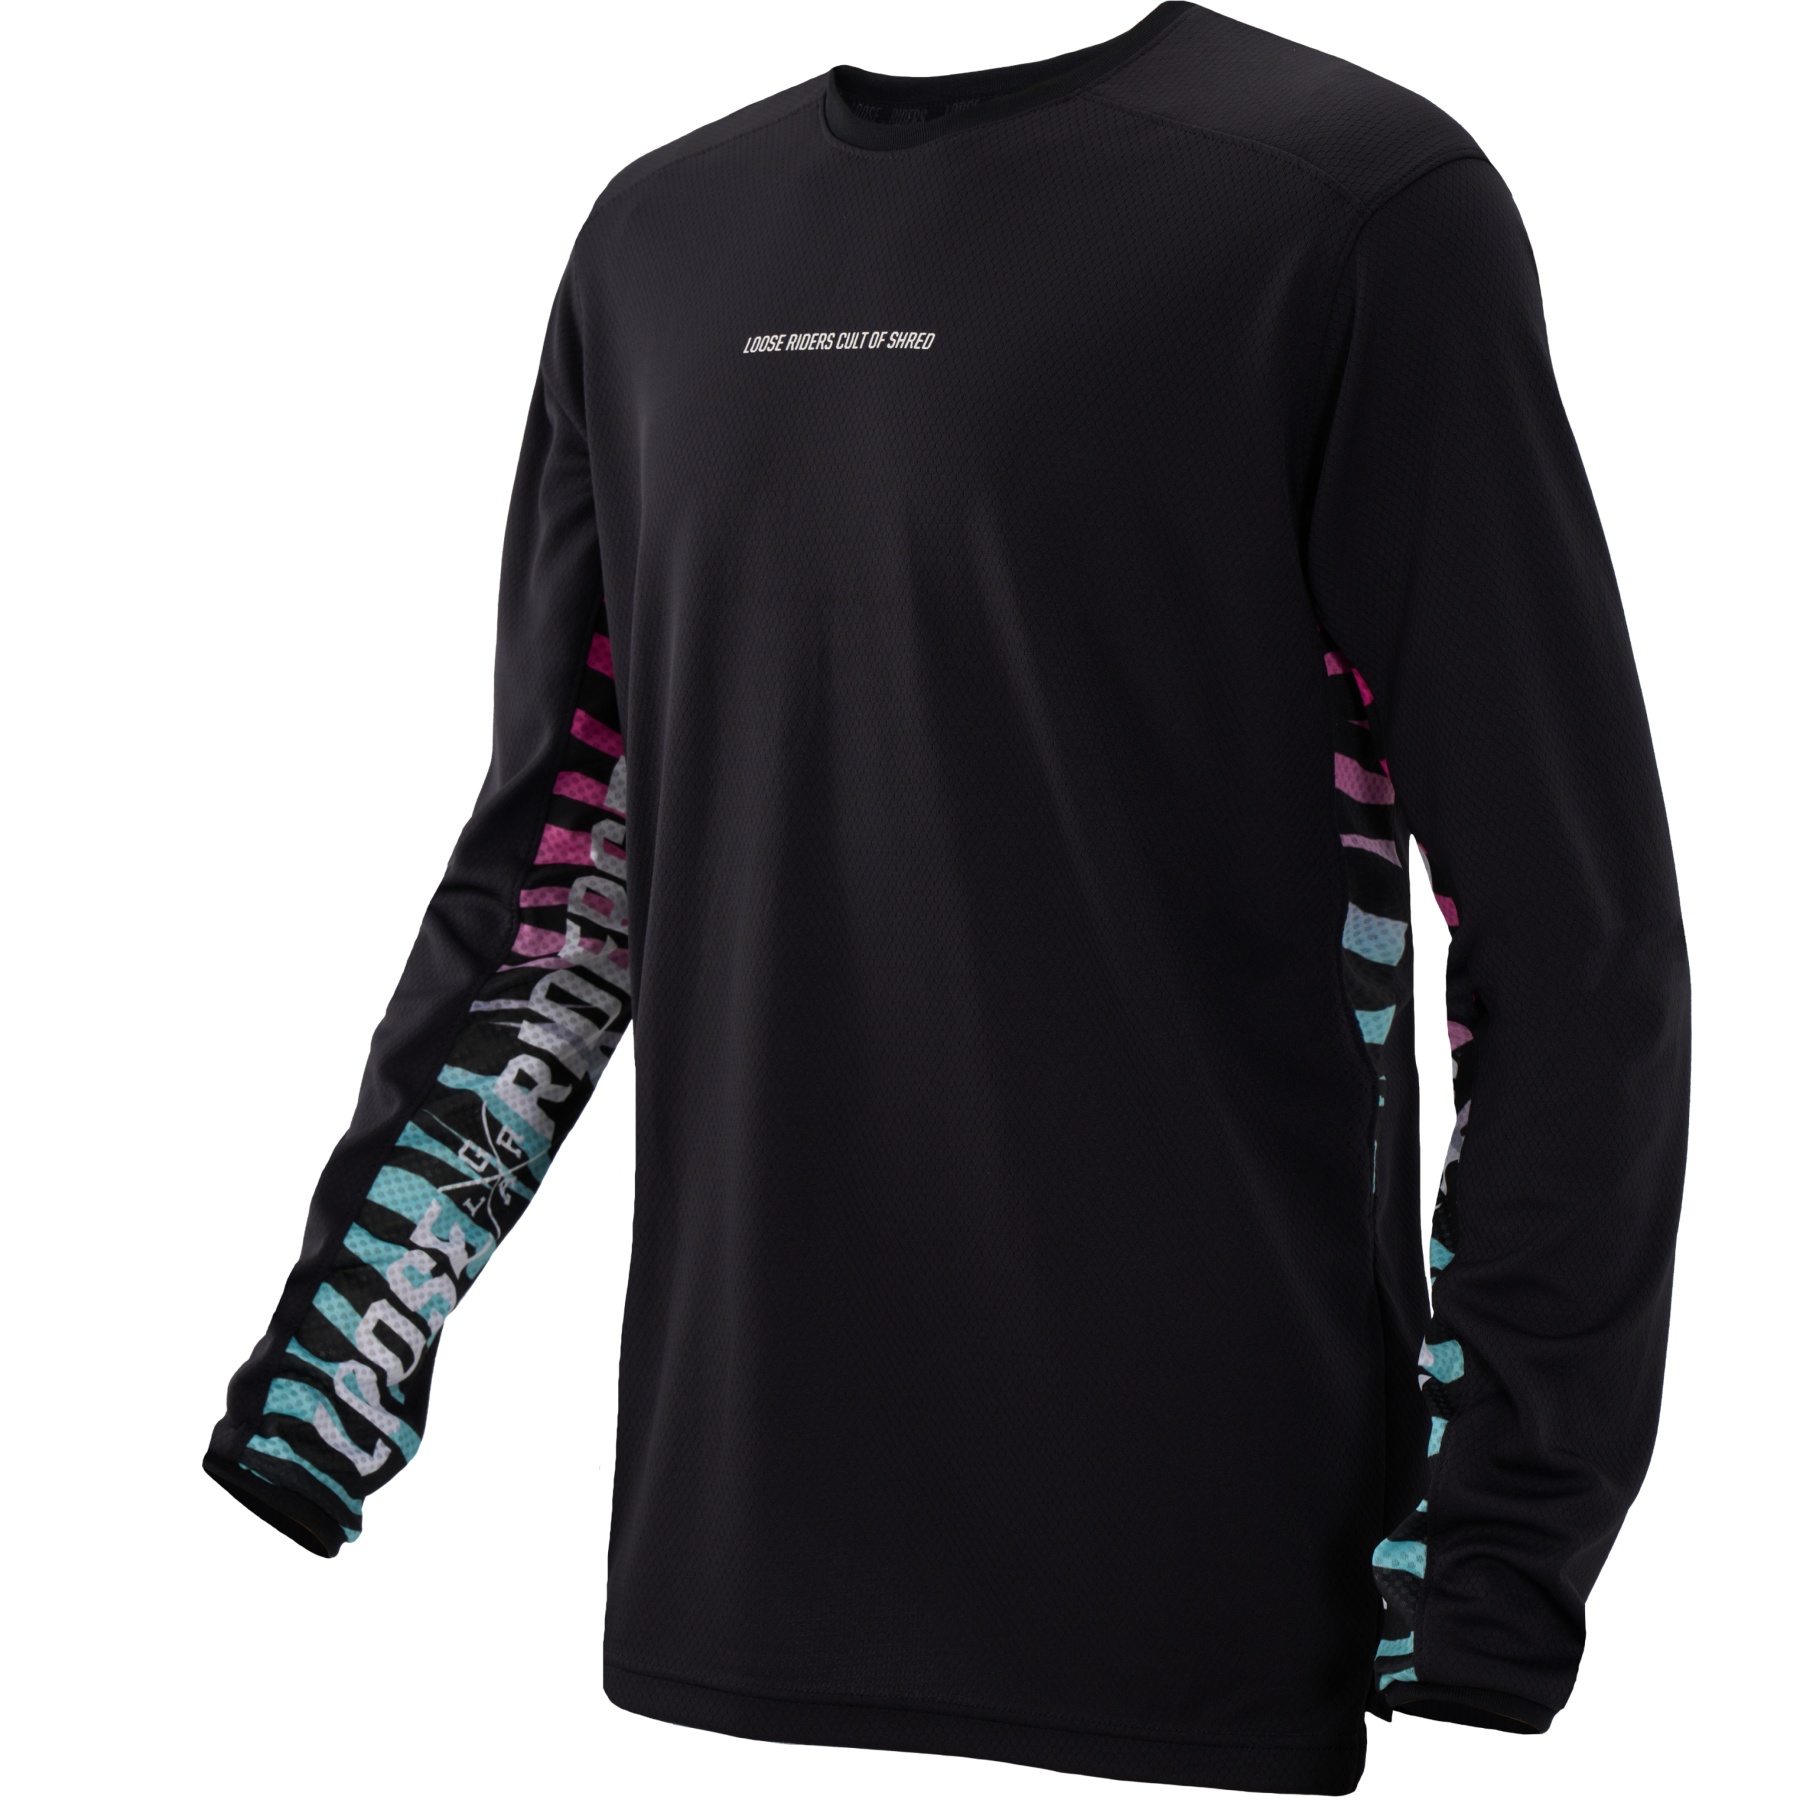 Productfoto van Loose Riders STLTH Technisch Shirt met Lange Mouwen - Rainbow Zebra